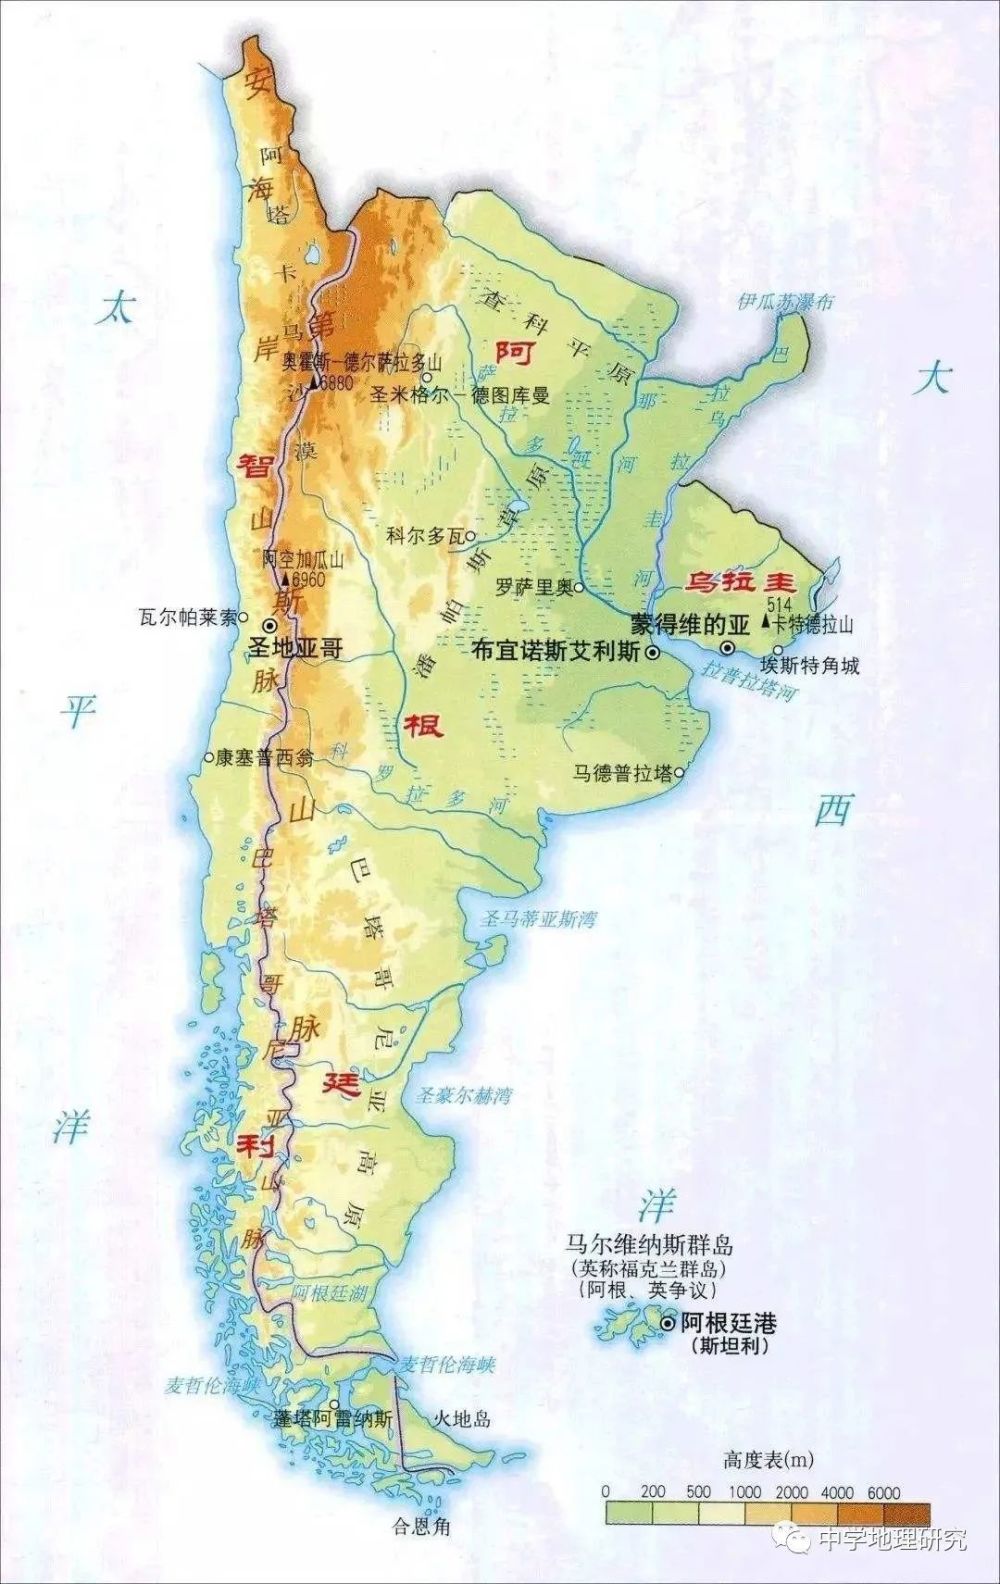 为南美第二大水系,主要支流有巴拉圭河,乌拉圭河等国际界河